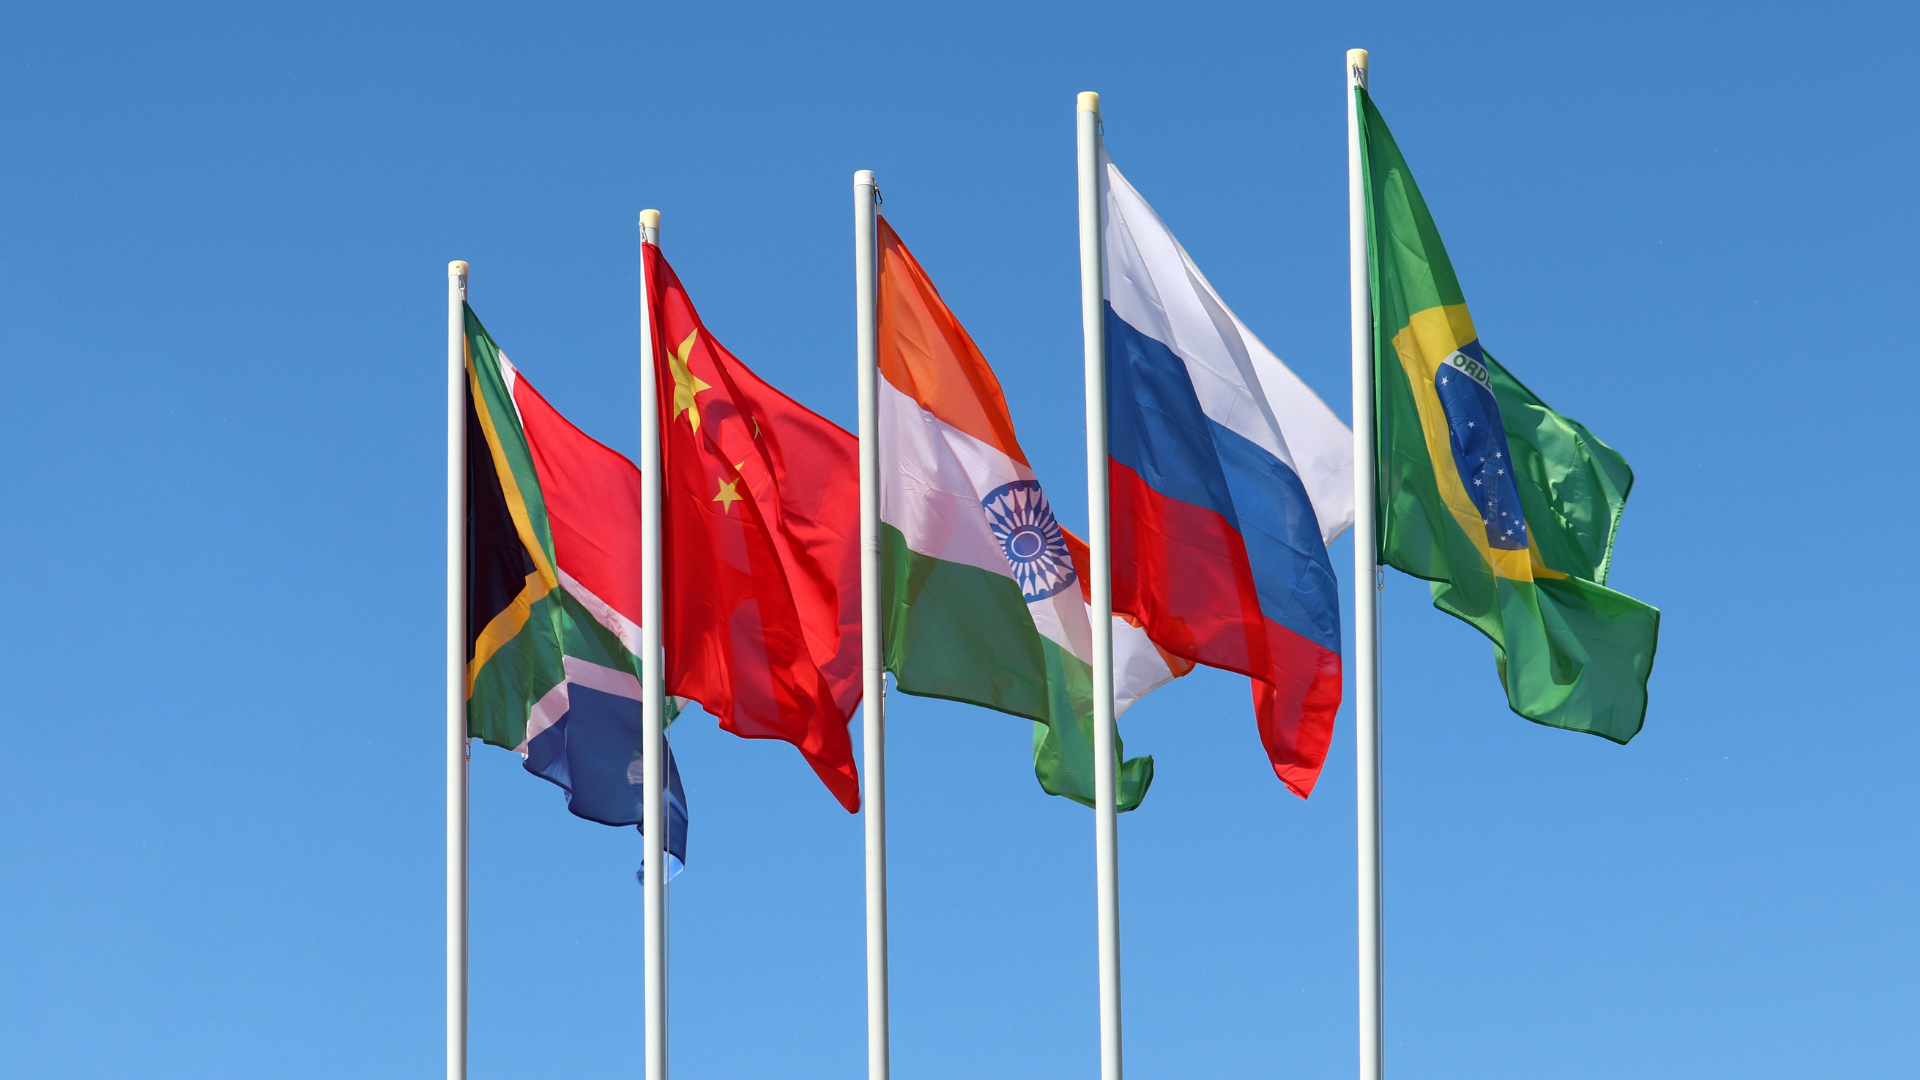 Aste con le bandiere del Sud Africa, della Cina, dell'India, della Russia e del Brasile